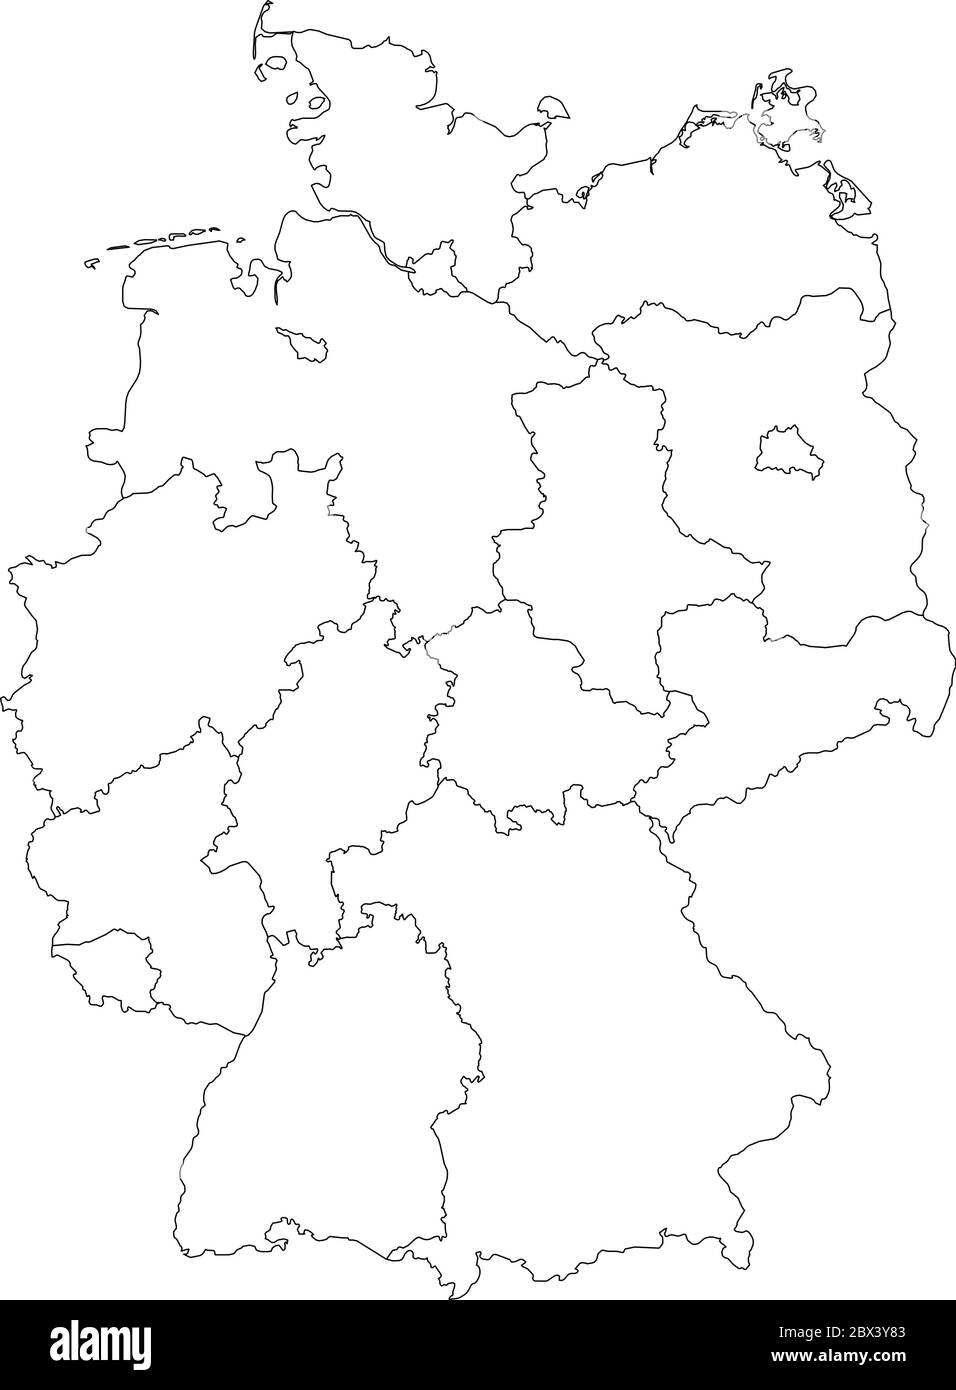 Mapa de Alemania devindo a 13 estados federales y 3 ciudades-estados - Berlín, Bremen y Hamburgo, Europa. Mapa vectorial blanco plano simple con contornos negros. Ilustración del Vector